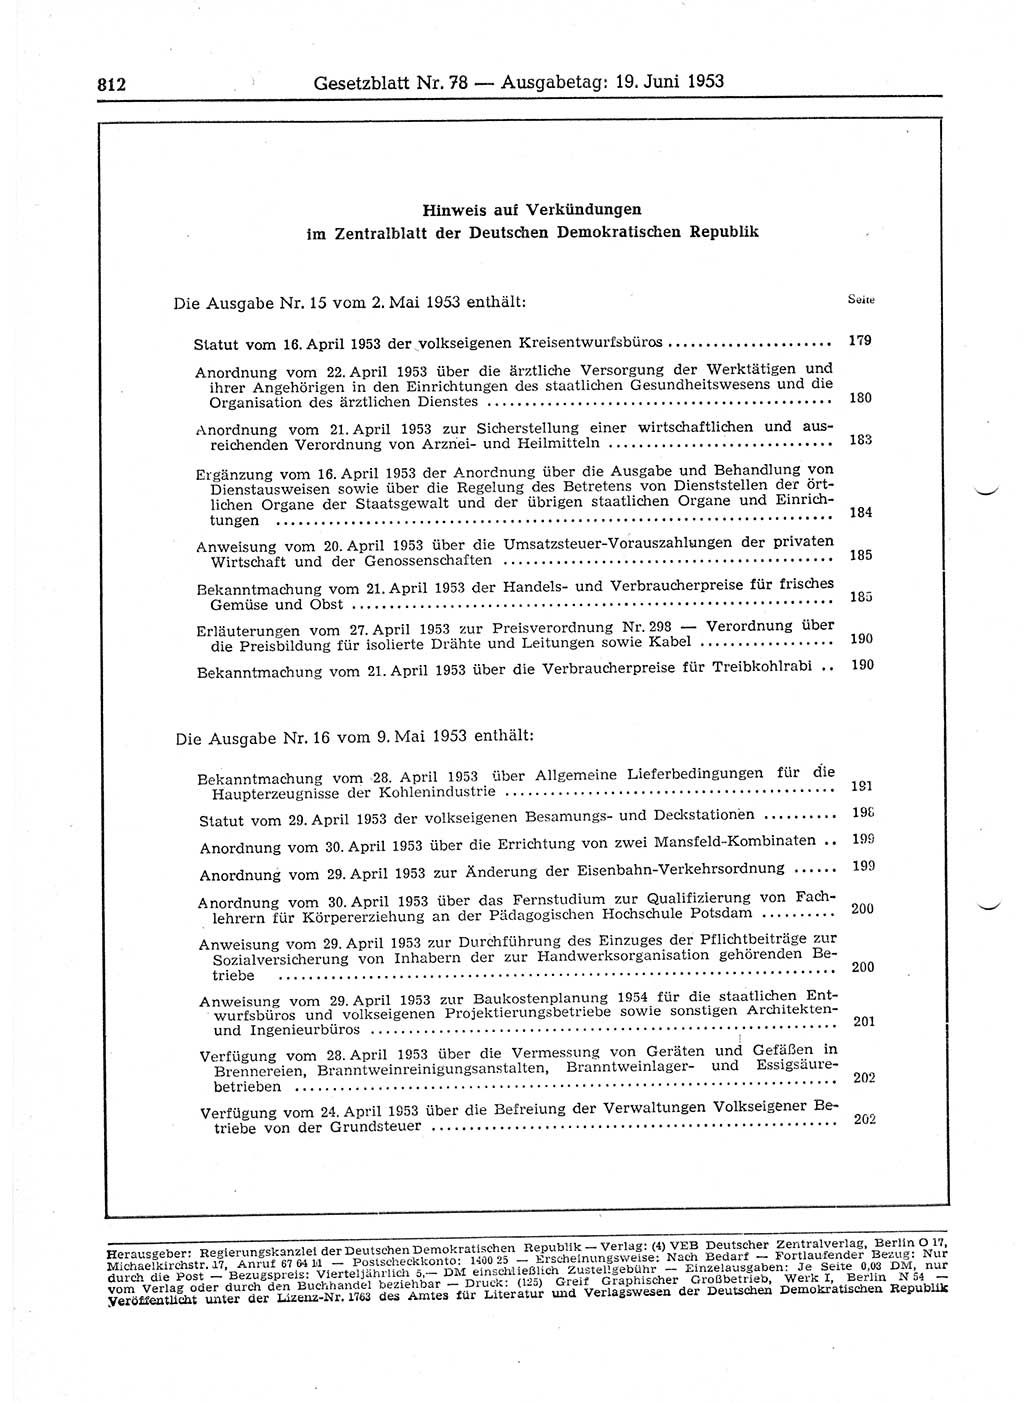 Gesetzblatt (GBl.) der Deutschen Demokratischen Republik (DDR) 1953, Seite 812 (GBl. DDR 1953, S. 812)